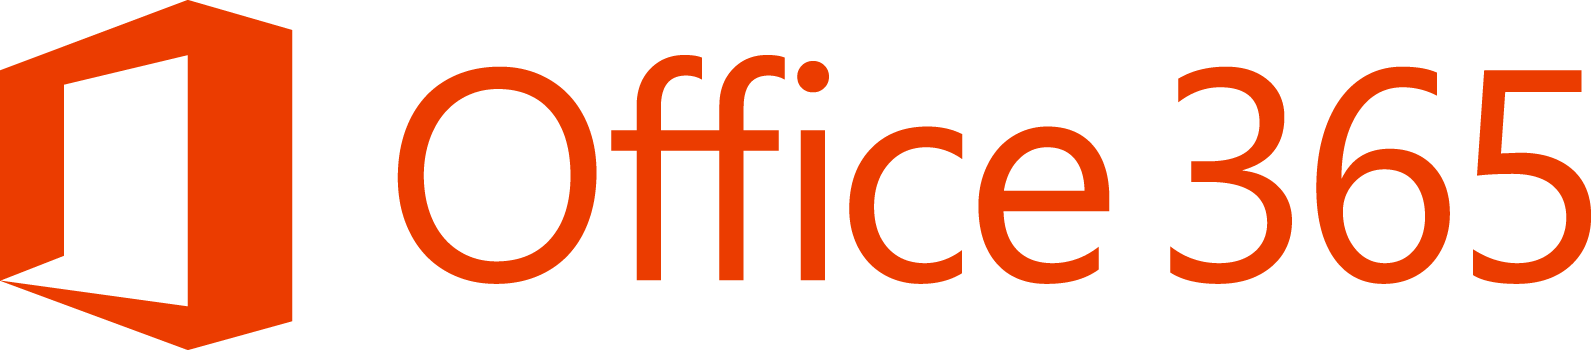 Office 365 będzie sprzedawany razem z prądem